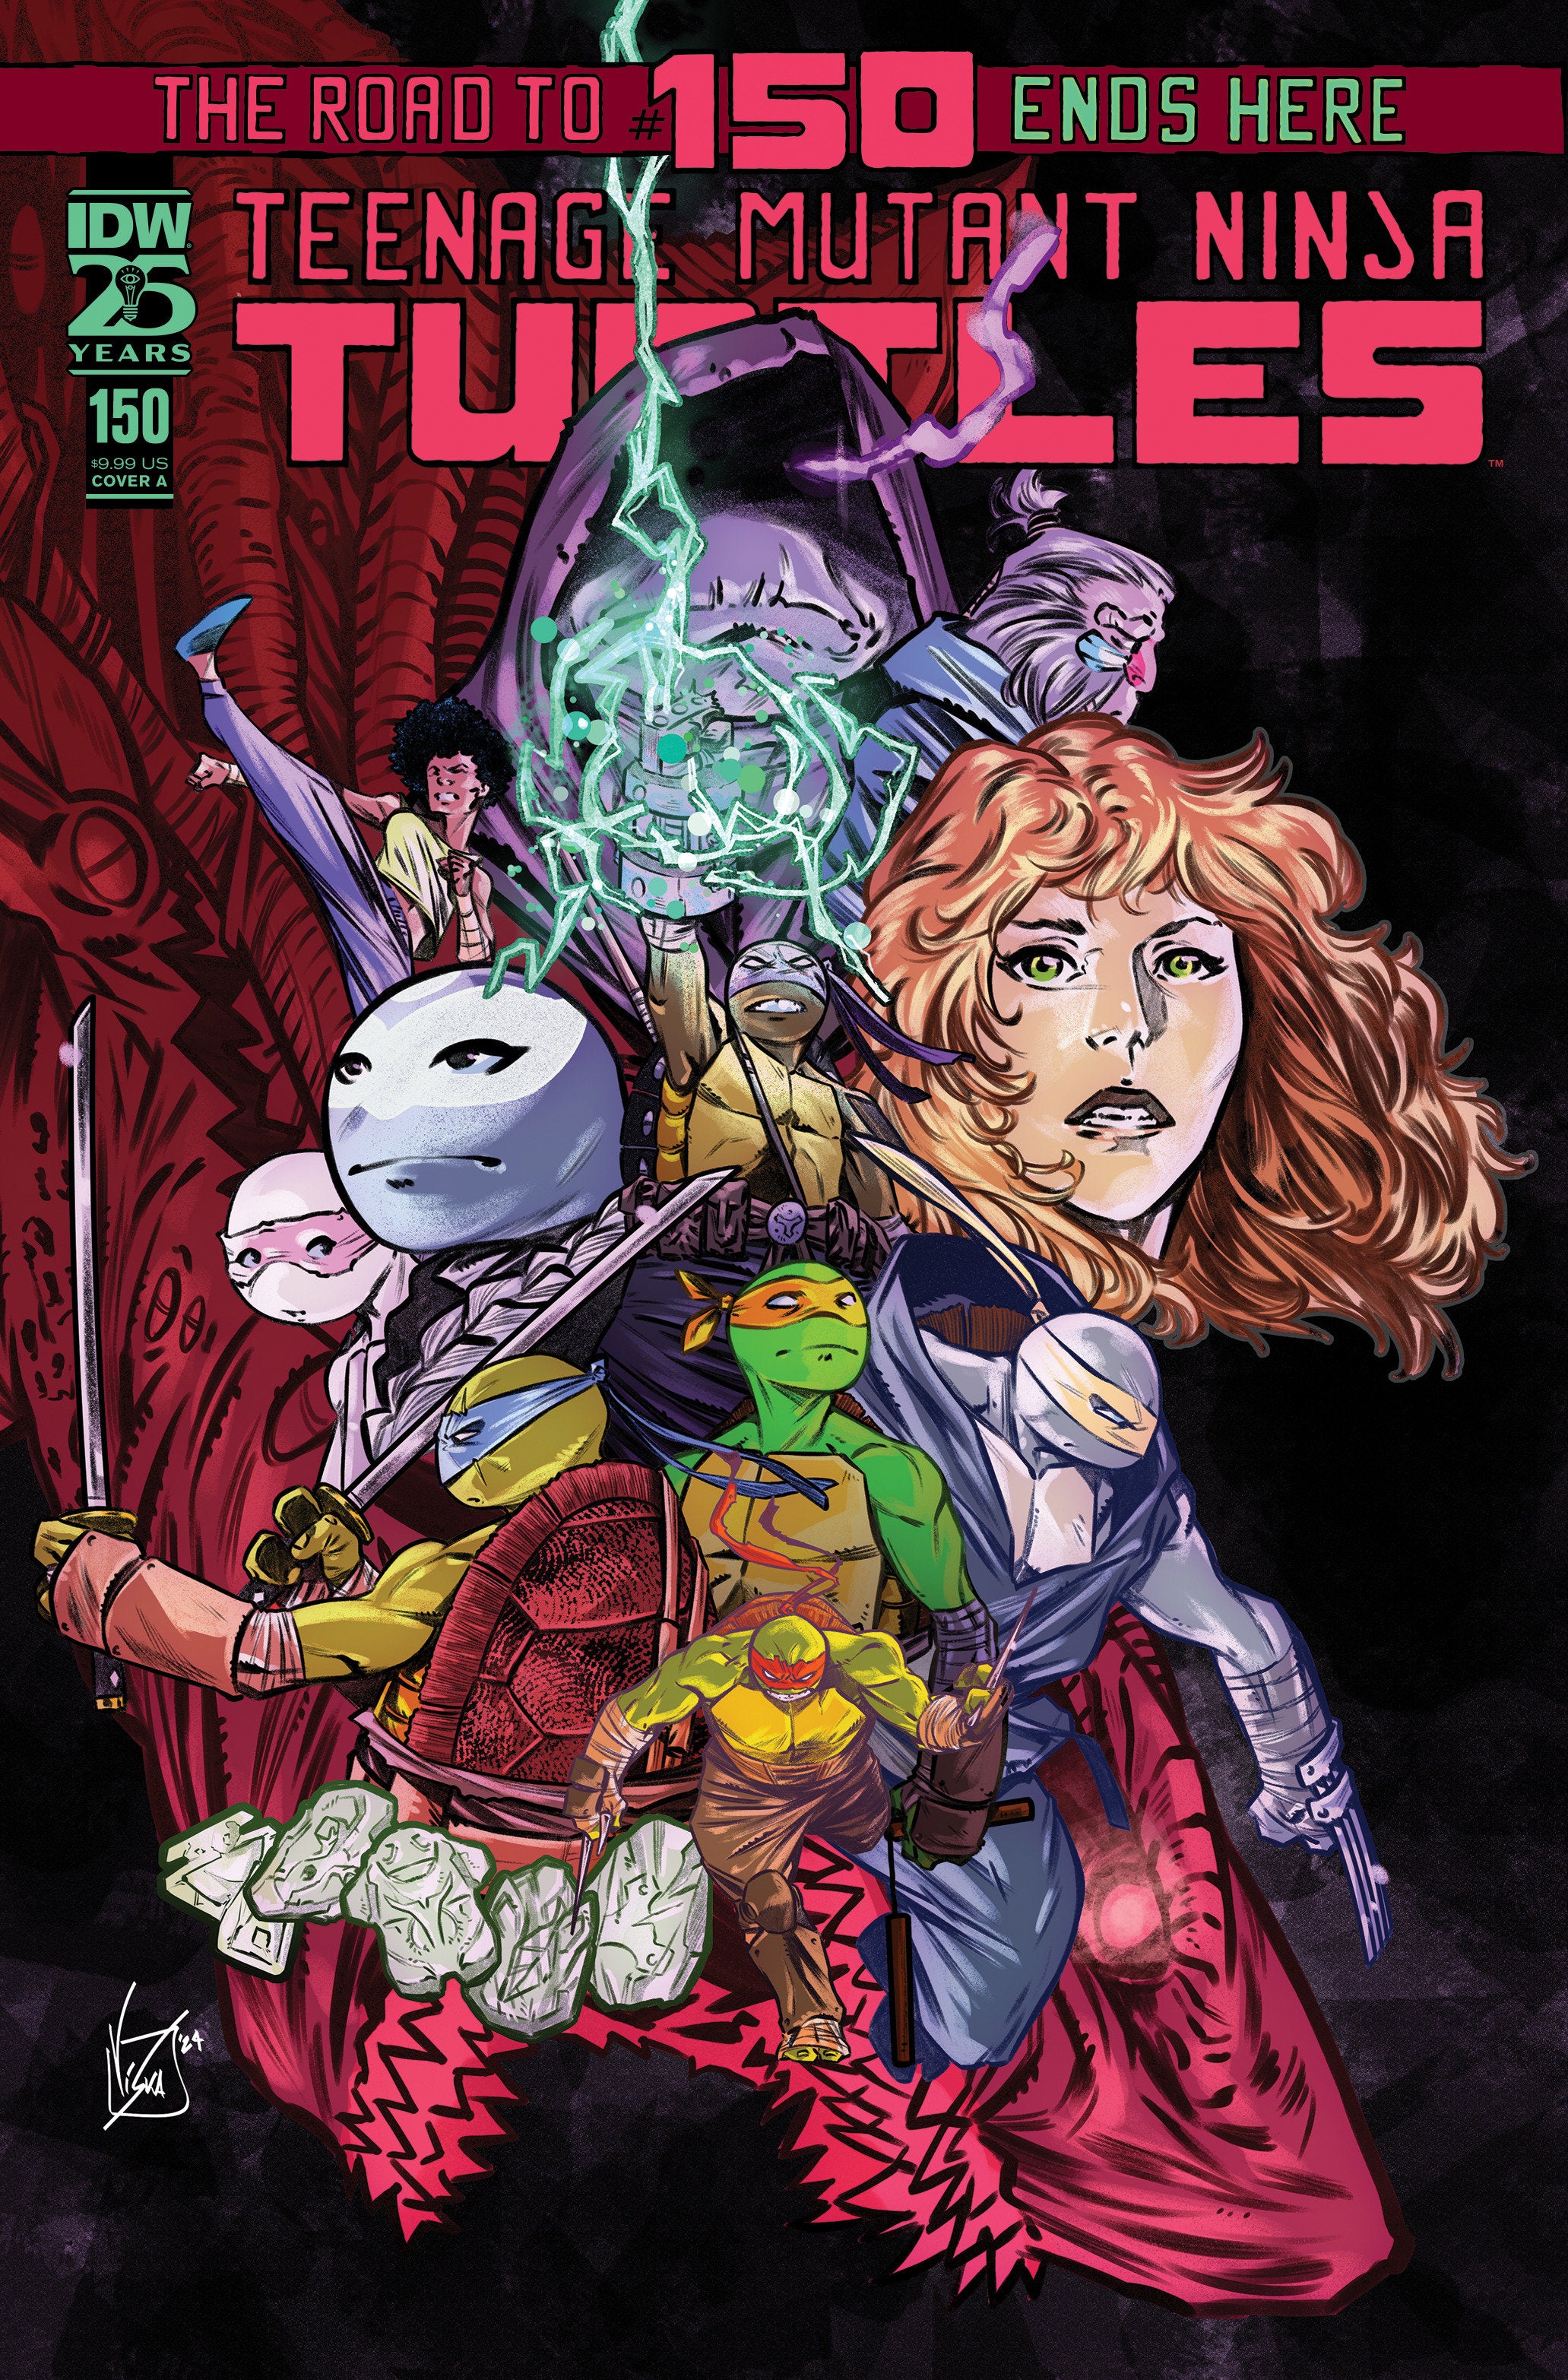 Teenage Mutant Ninja Turtles #150 Cover A (Federici)